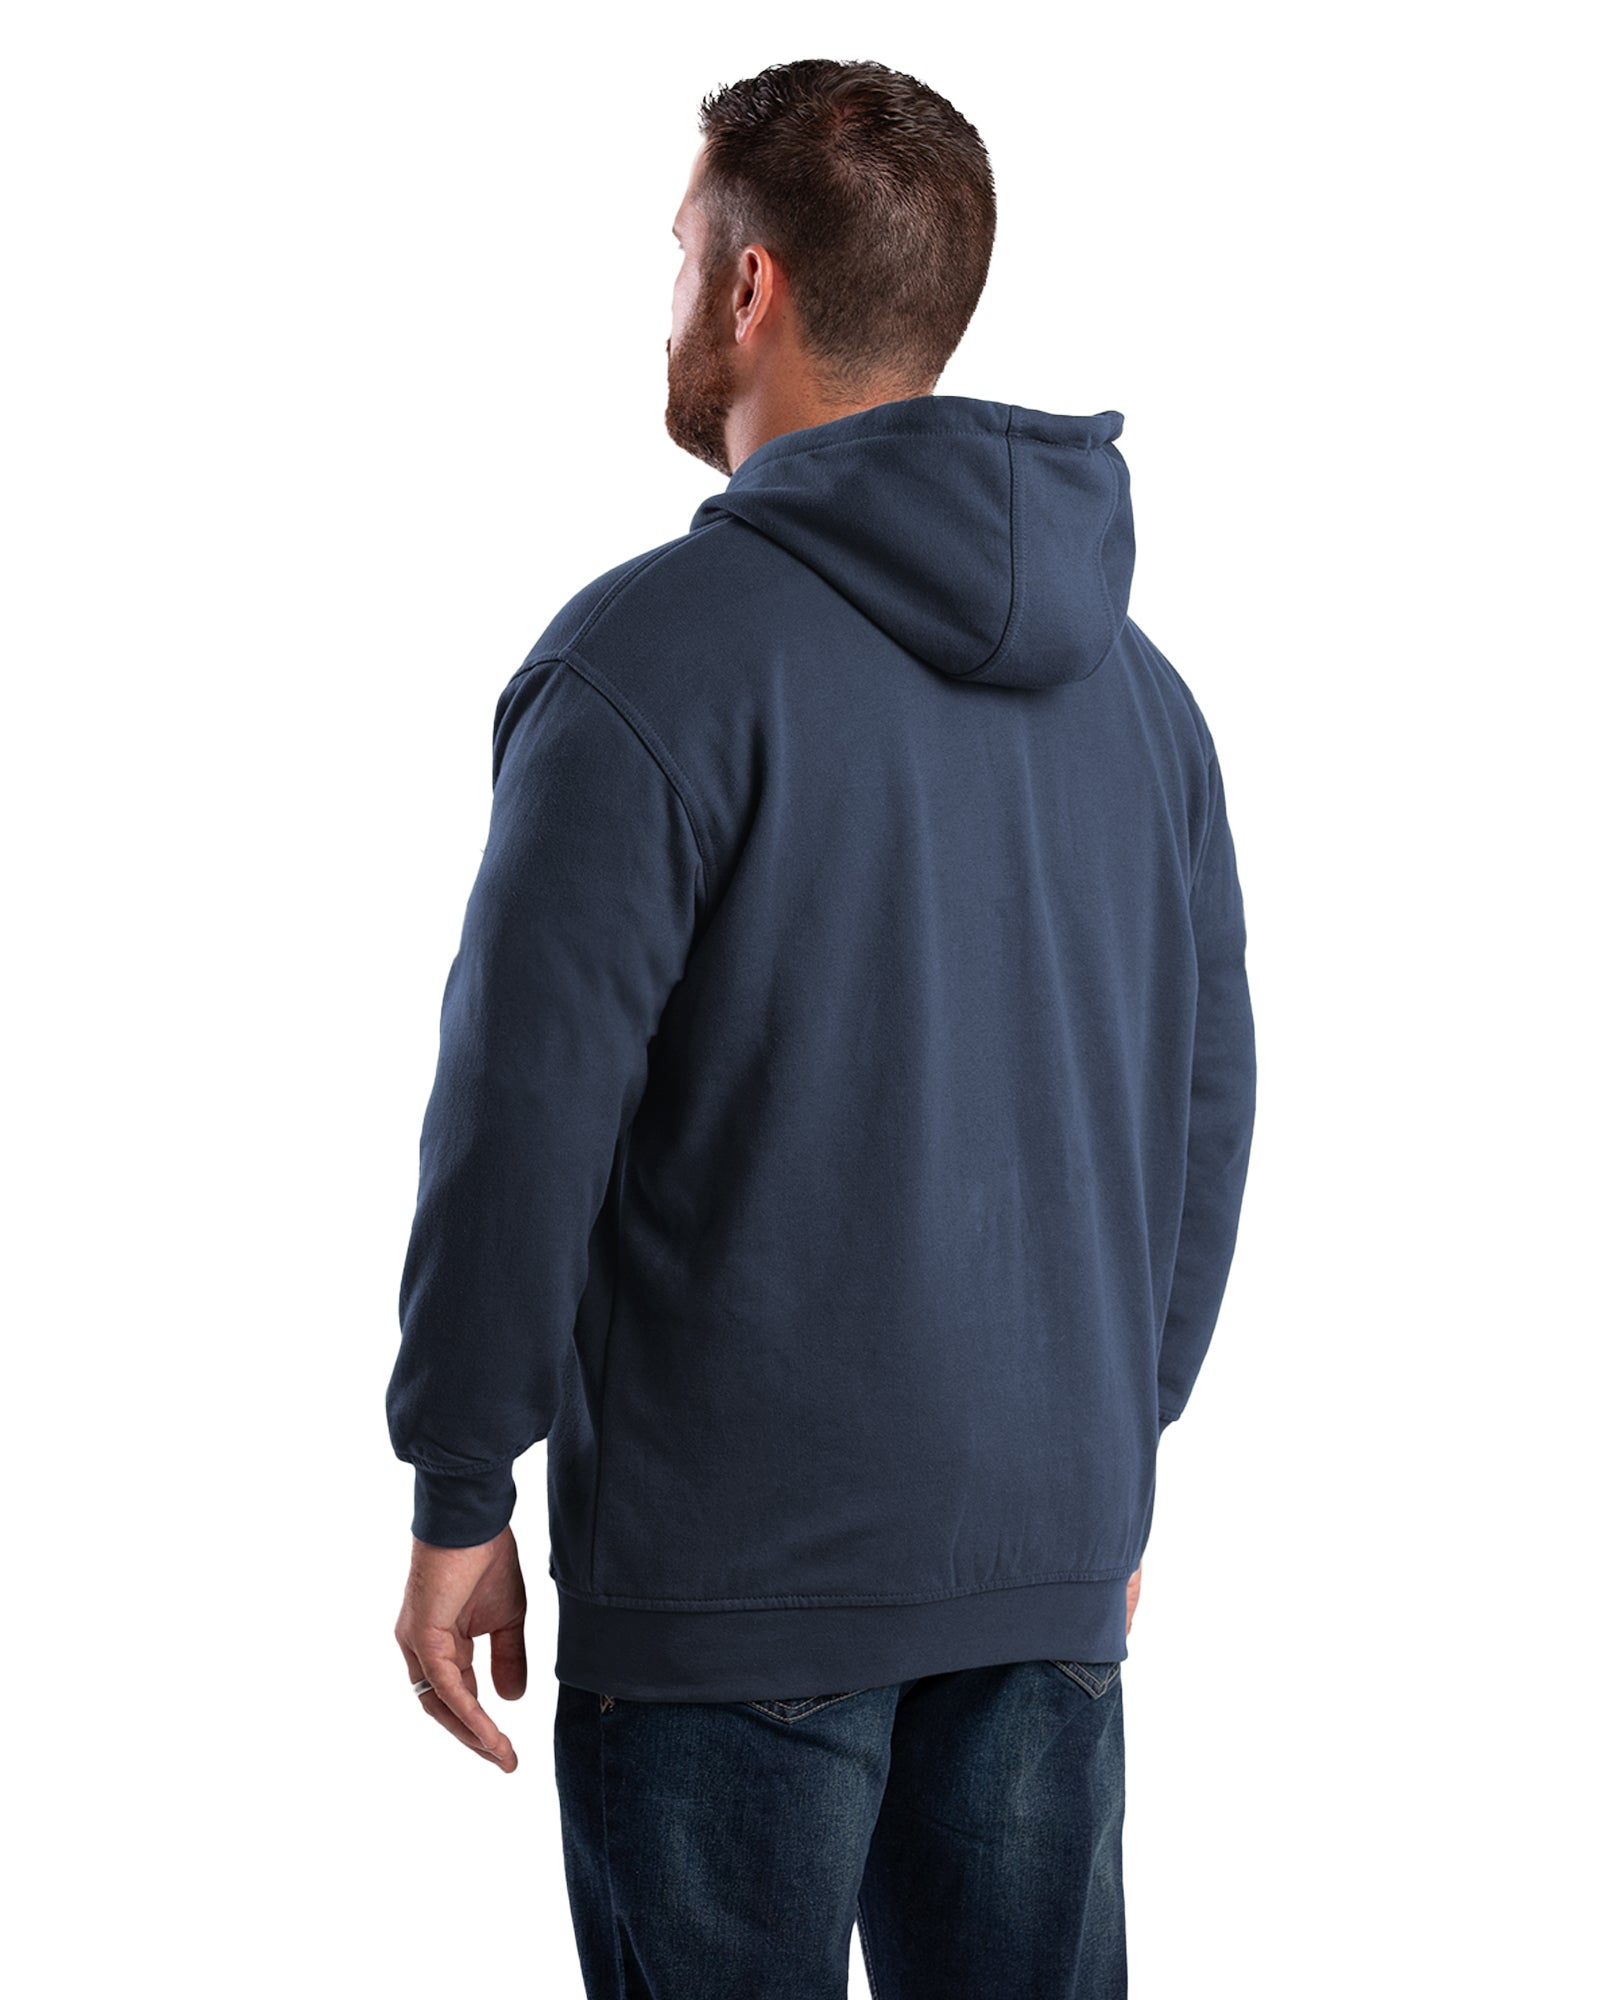 Schmidt Workwear Thermal Lined Hoodie Full Zip Sweatshirt Mens 3XL Gray